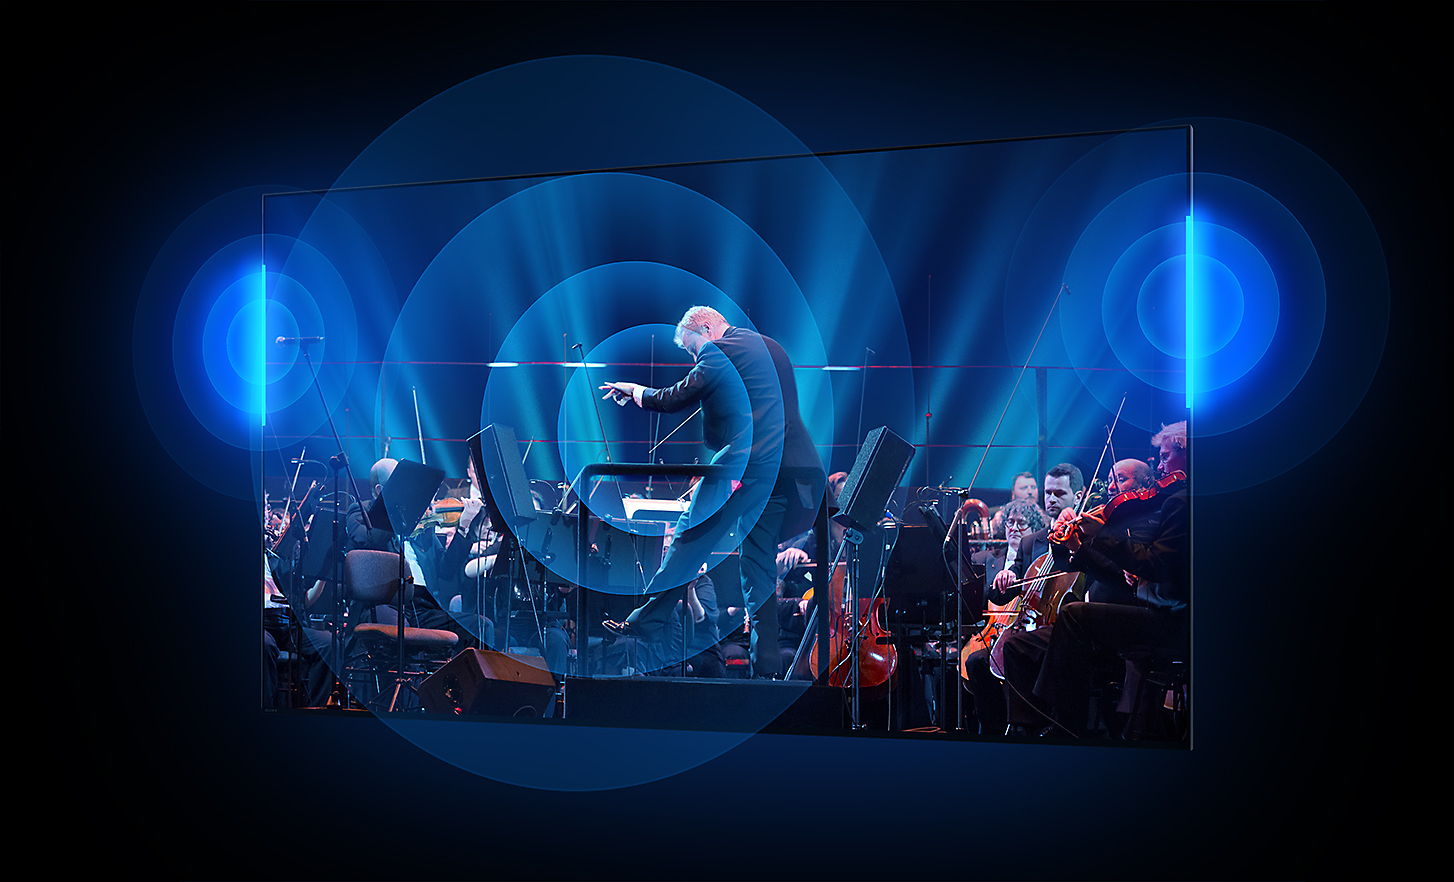 Écran de la TV BRAVIA montrant un chef d'orchestre et son orchestre avec des ondes sonores se propageant en cercles à partir du centre de l'écran